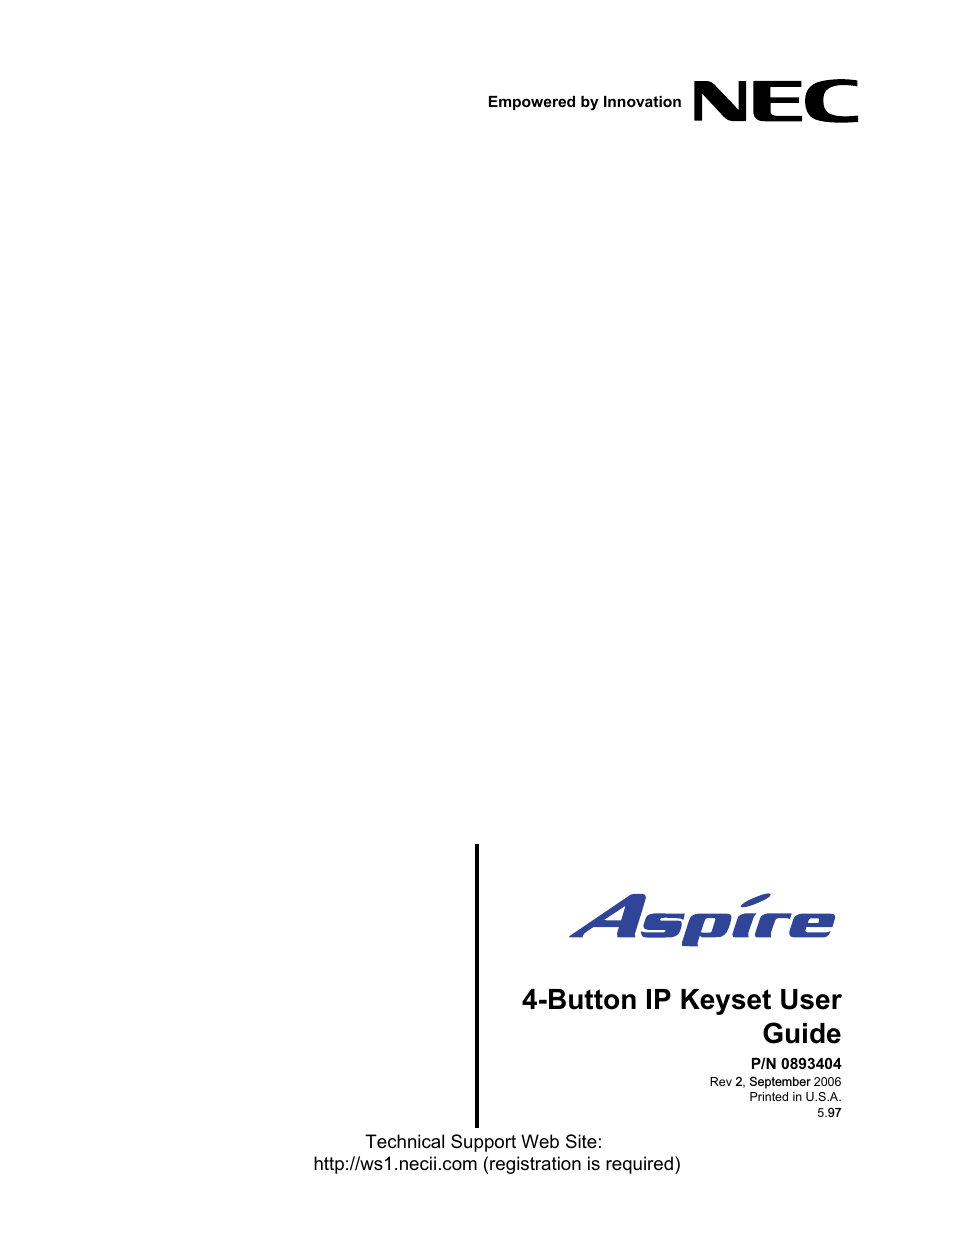 Aspire 4-Button IP Keyset